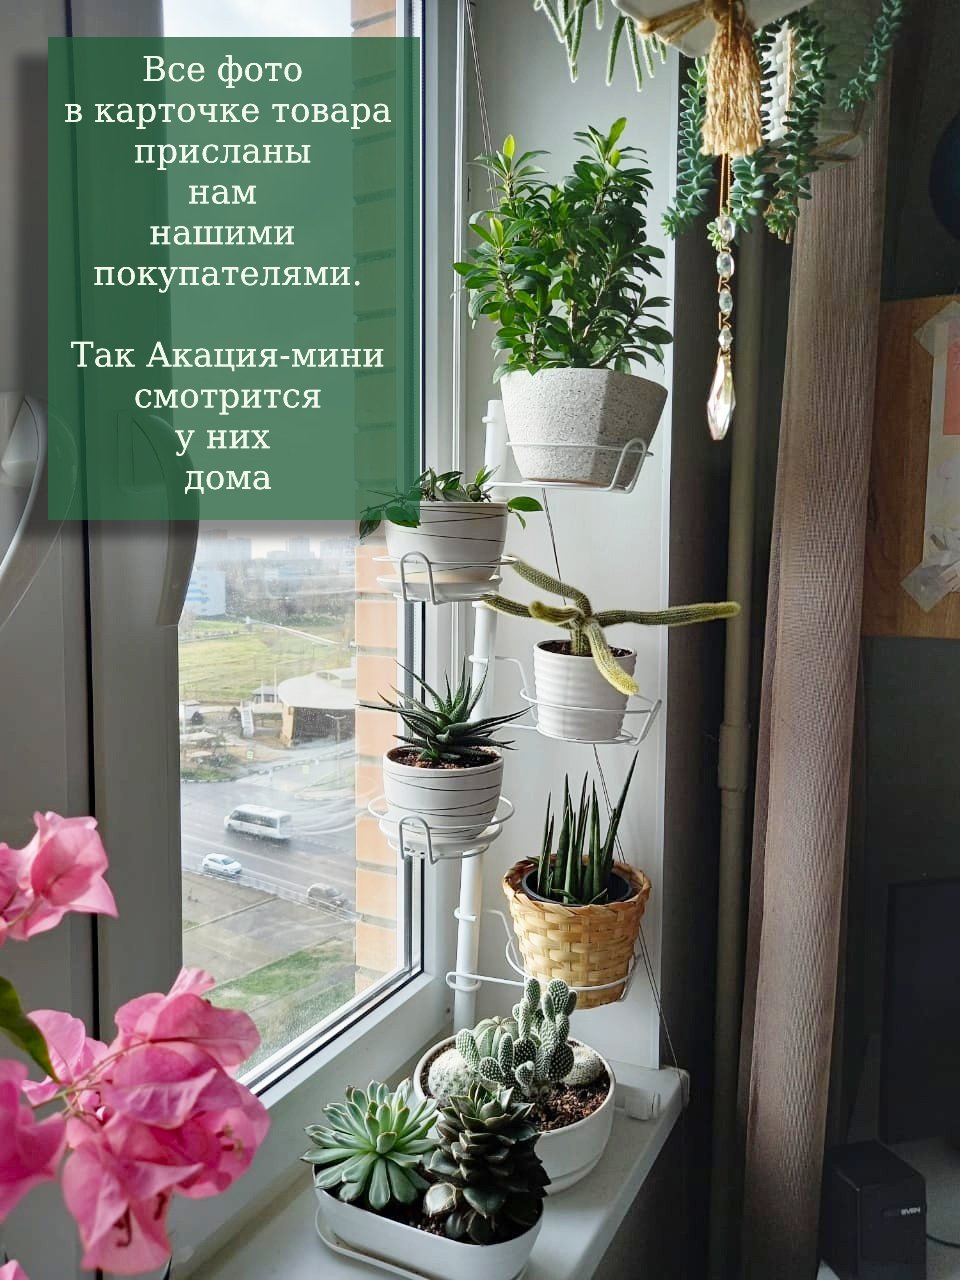 Купить горшки для цветов в Киеве по лучшей цене - интернет магазин ELSA